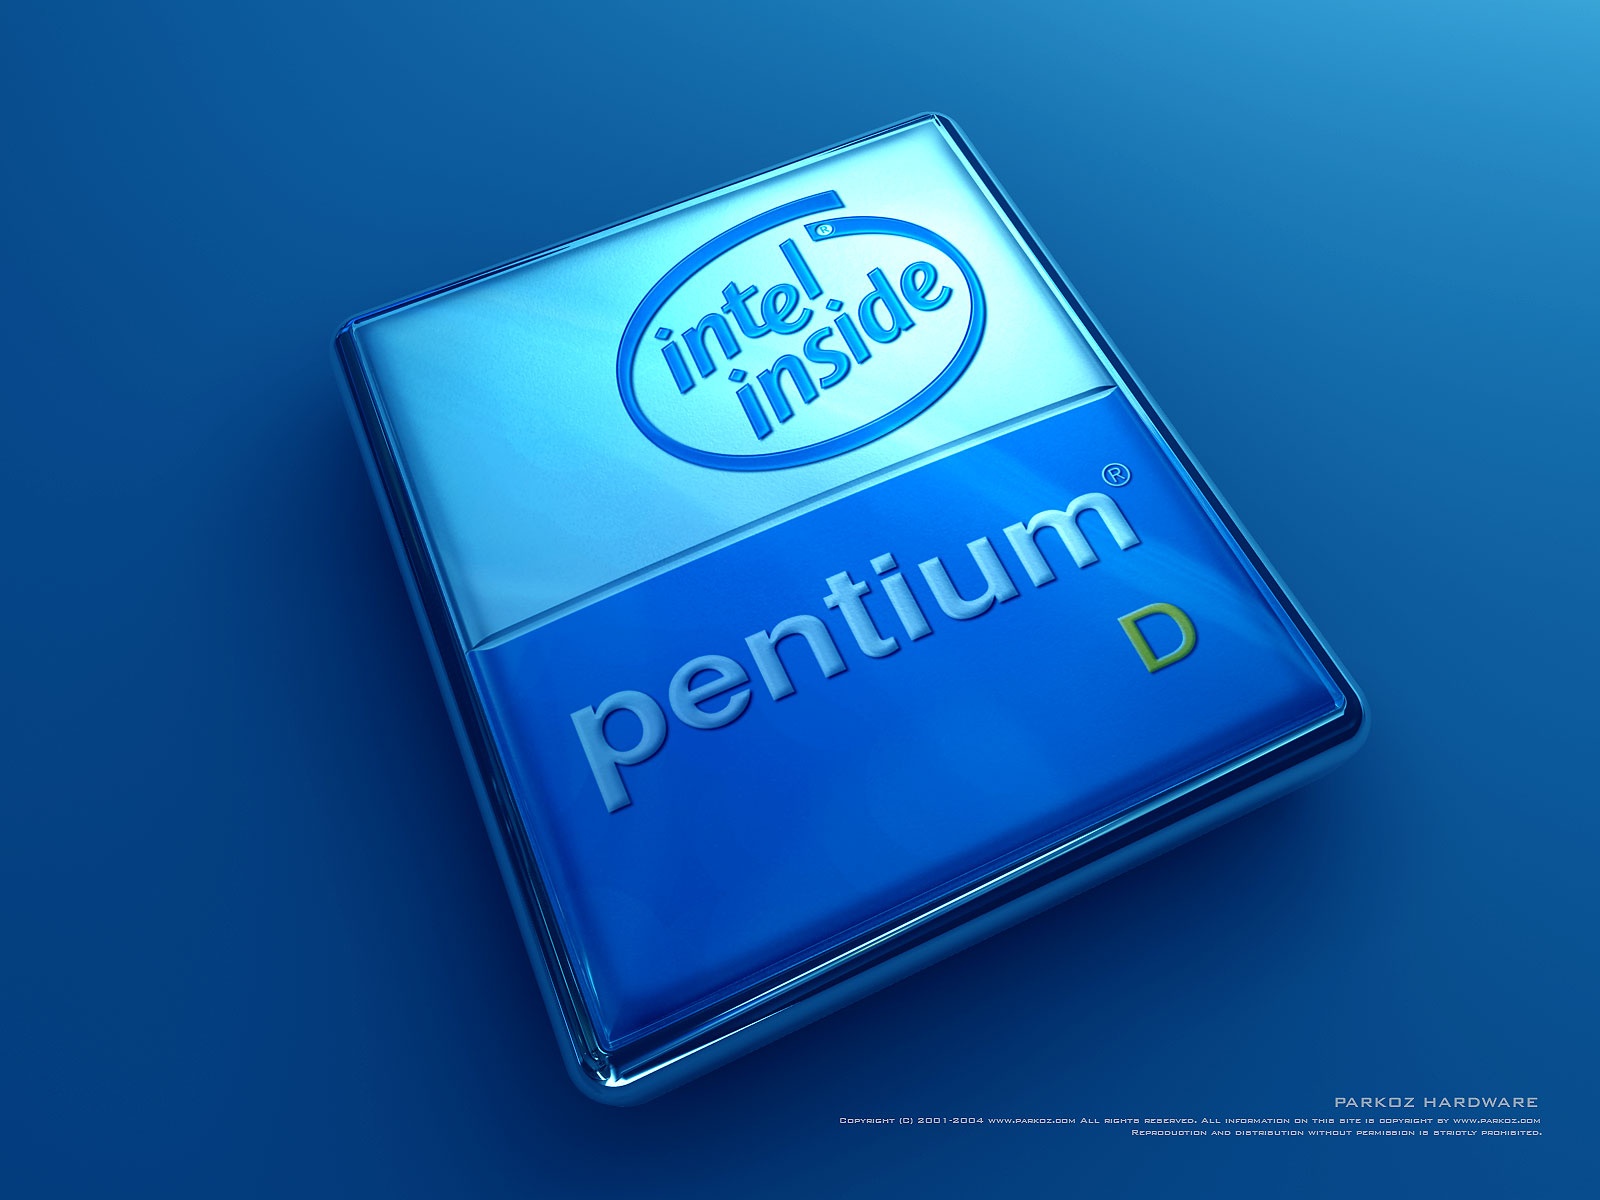 Pentium Inside Wallpaper Stock Photos